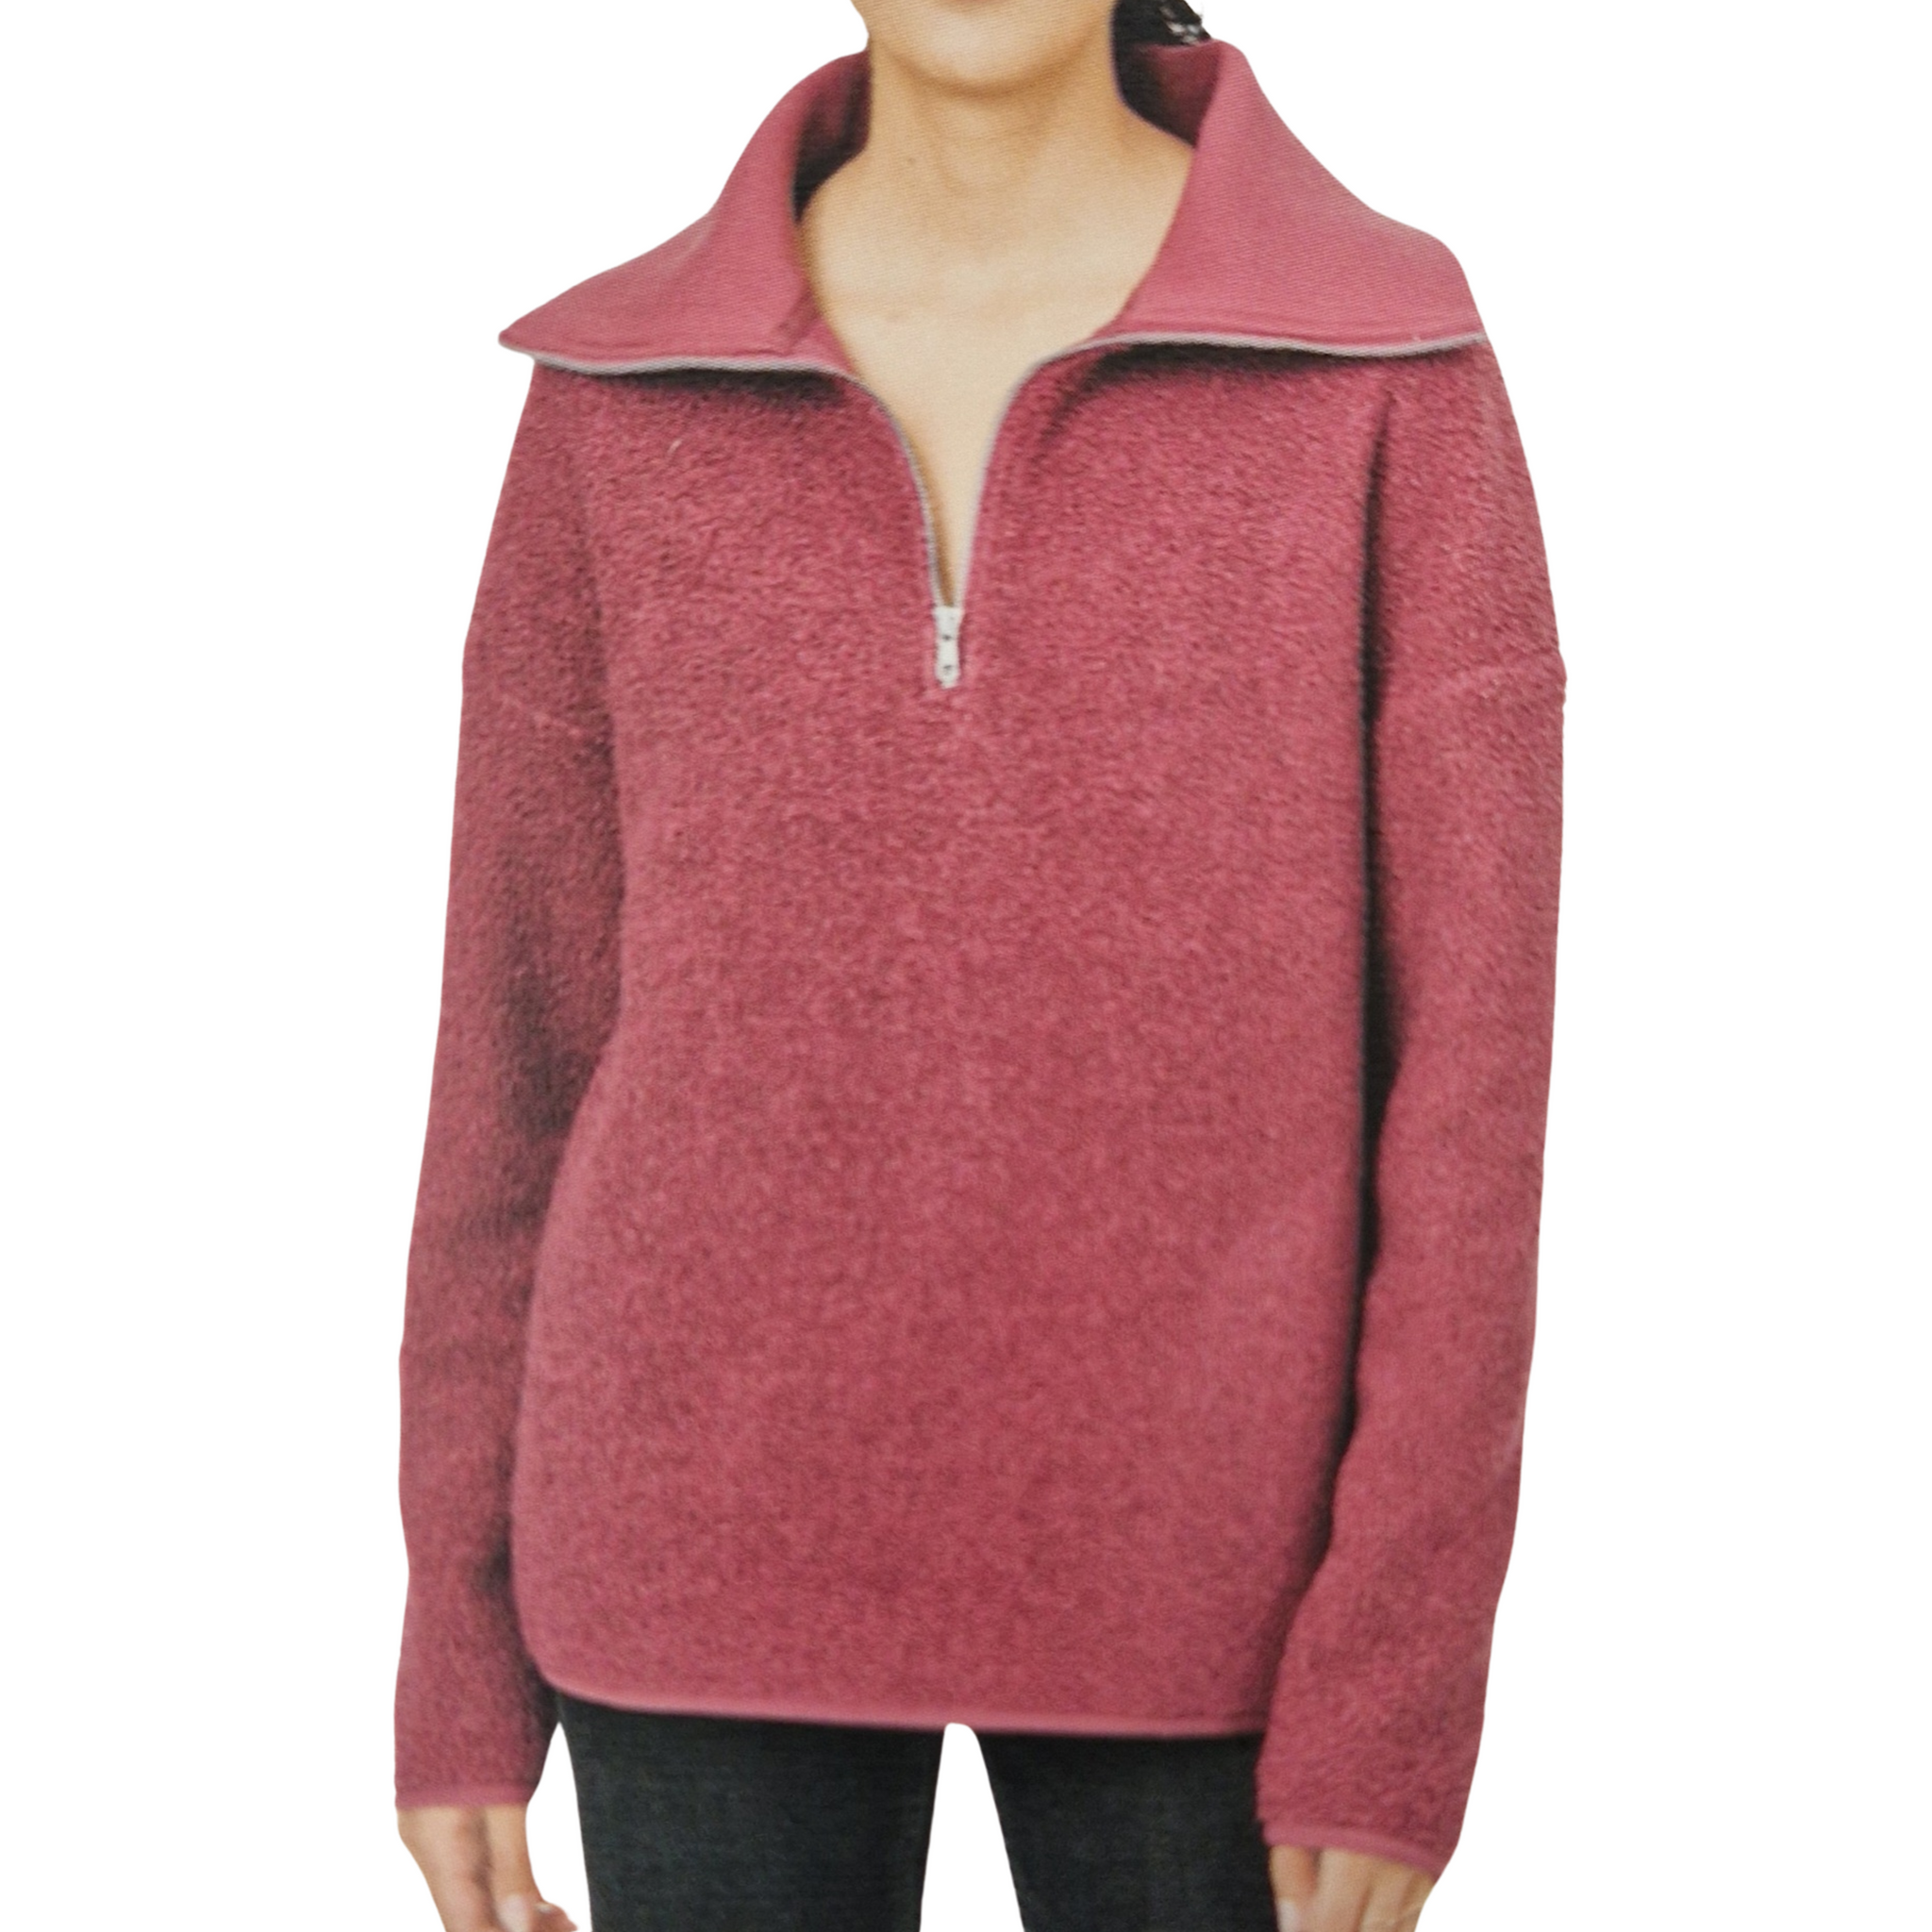 Zip-up fleece sweater